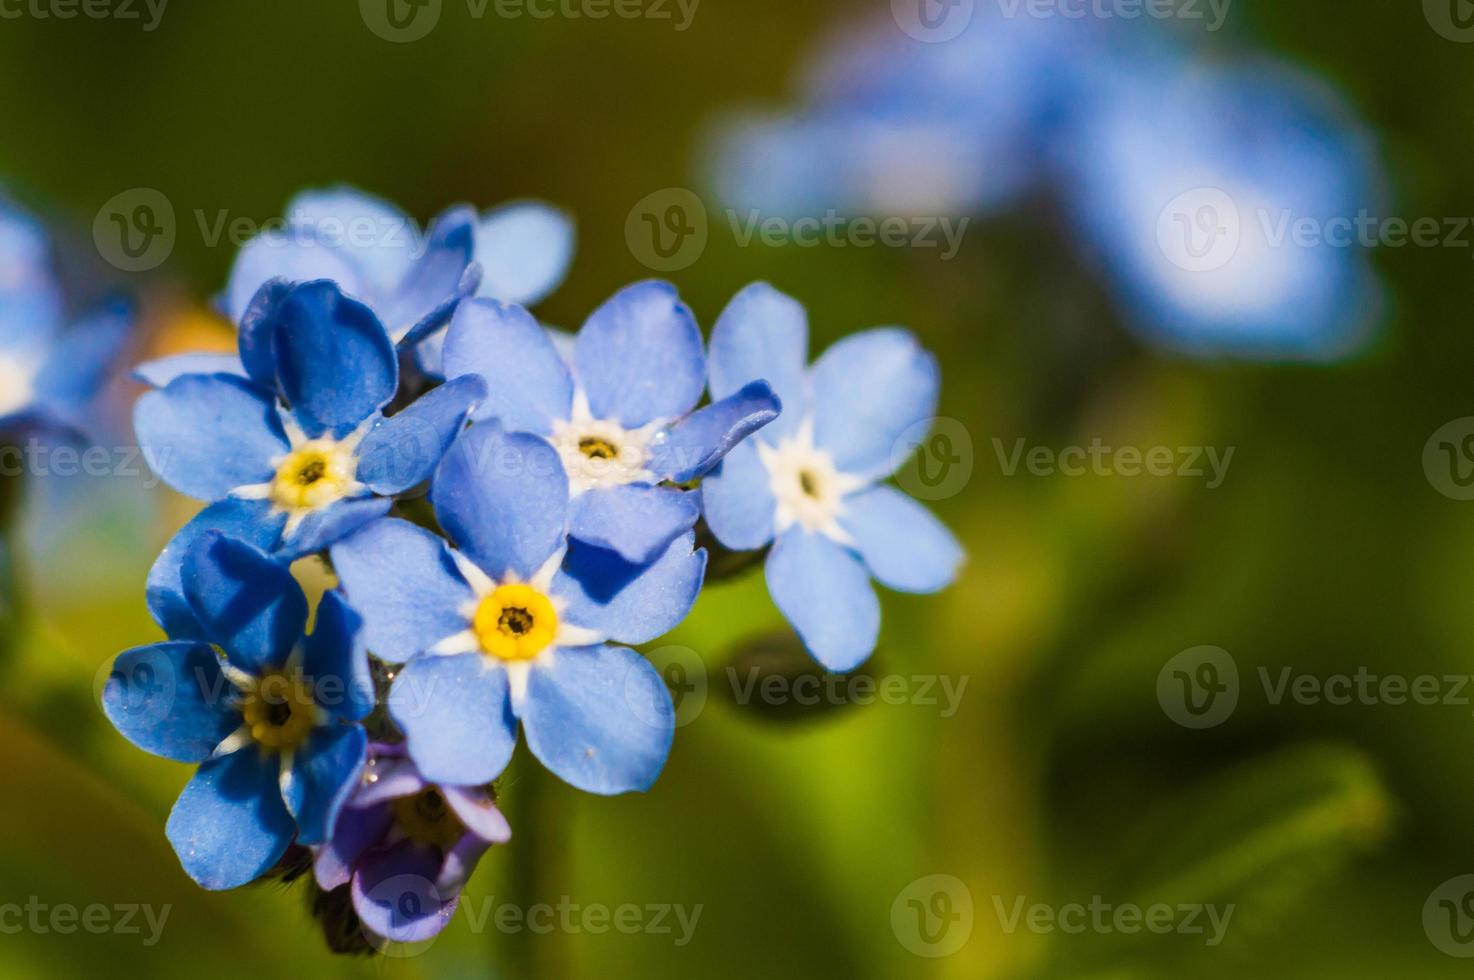 vergeet me niet bloem met blauwe bloemblaadjes en geel centrum foto